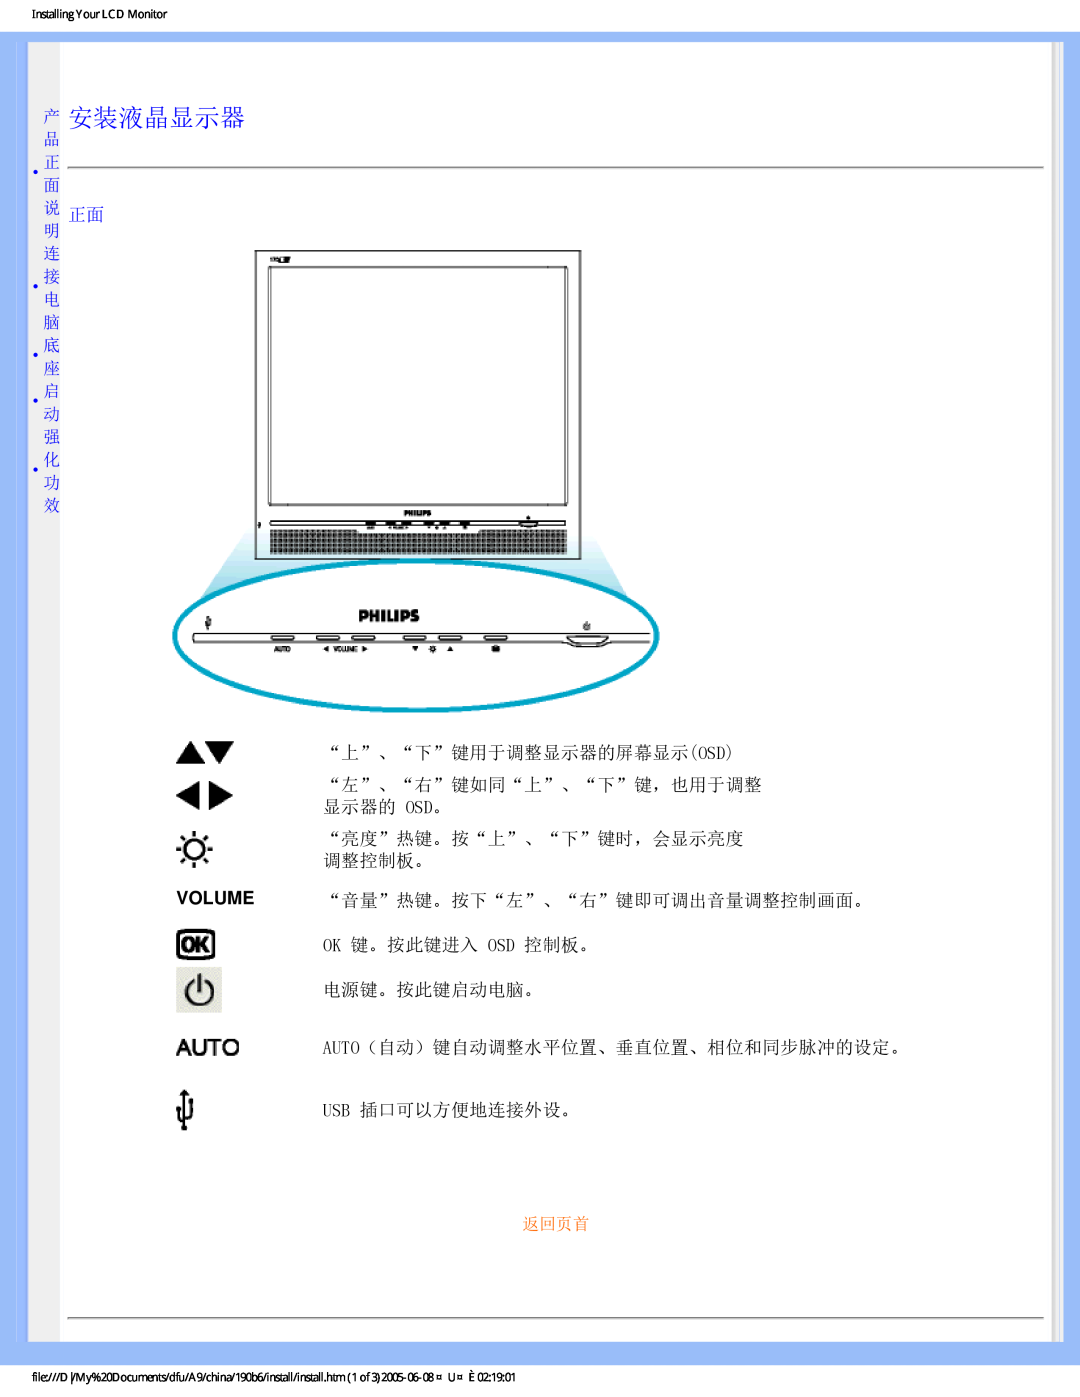 Philips 190B6 产 安装液晶显示器, Volume, “上”、“下”键用于调整显示器的屏幕显示osd “左”、“右”键如同“上”、“下”键，也用于调整 显示器的 Osd。, Usb 插口可以方便地连接外设。, 返回页首 